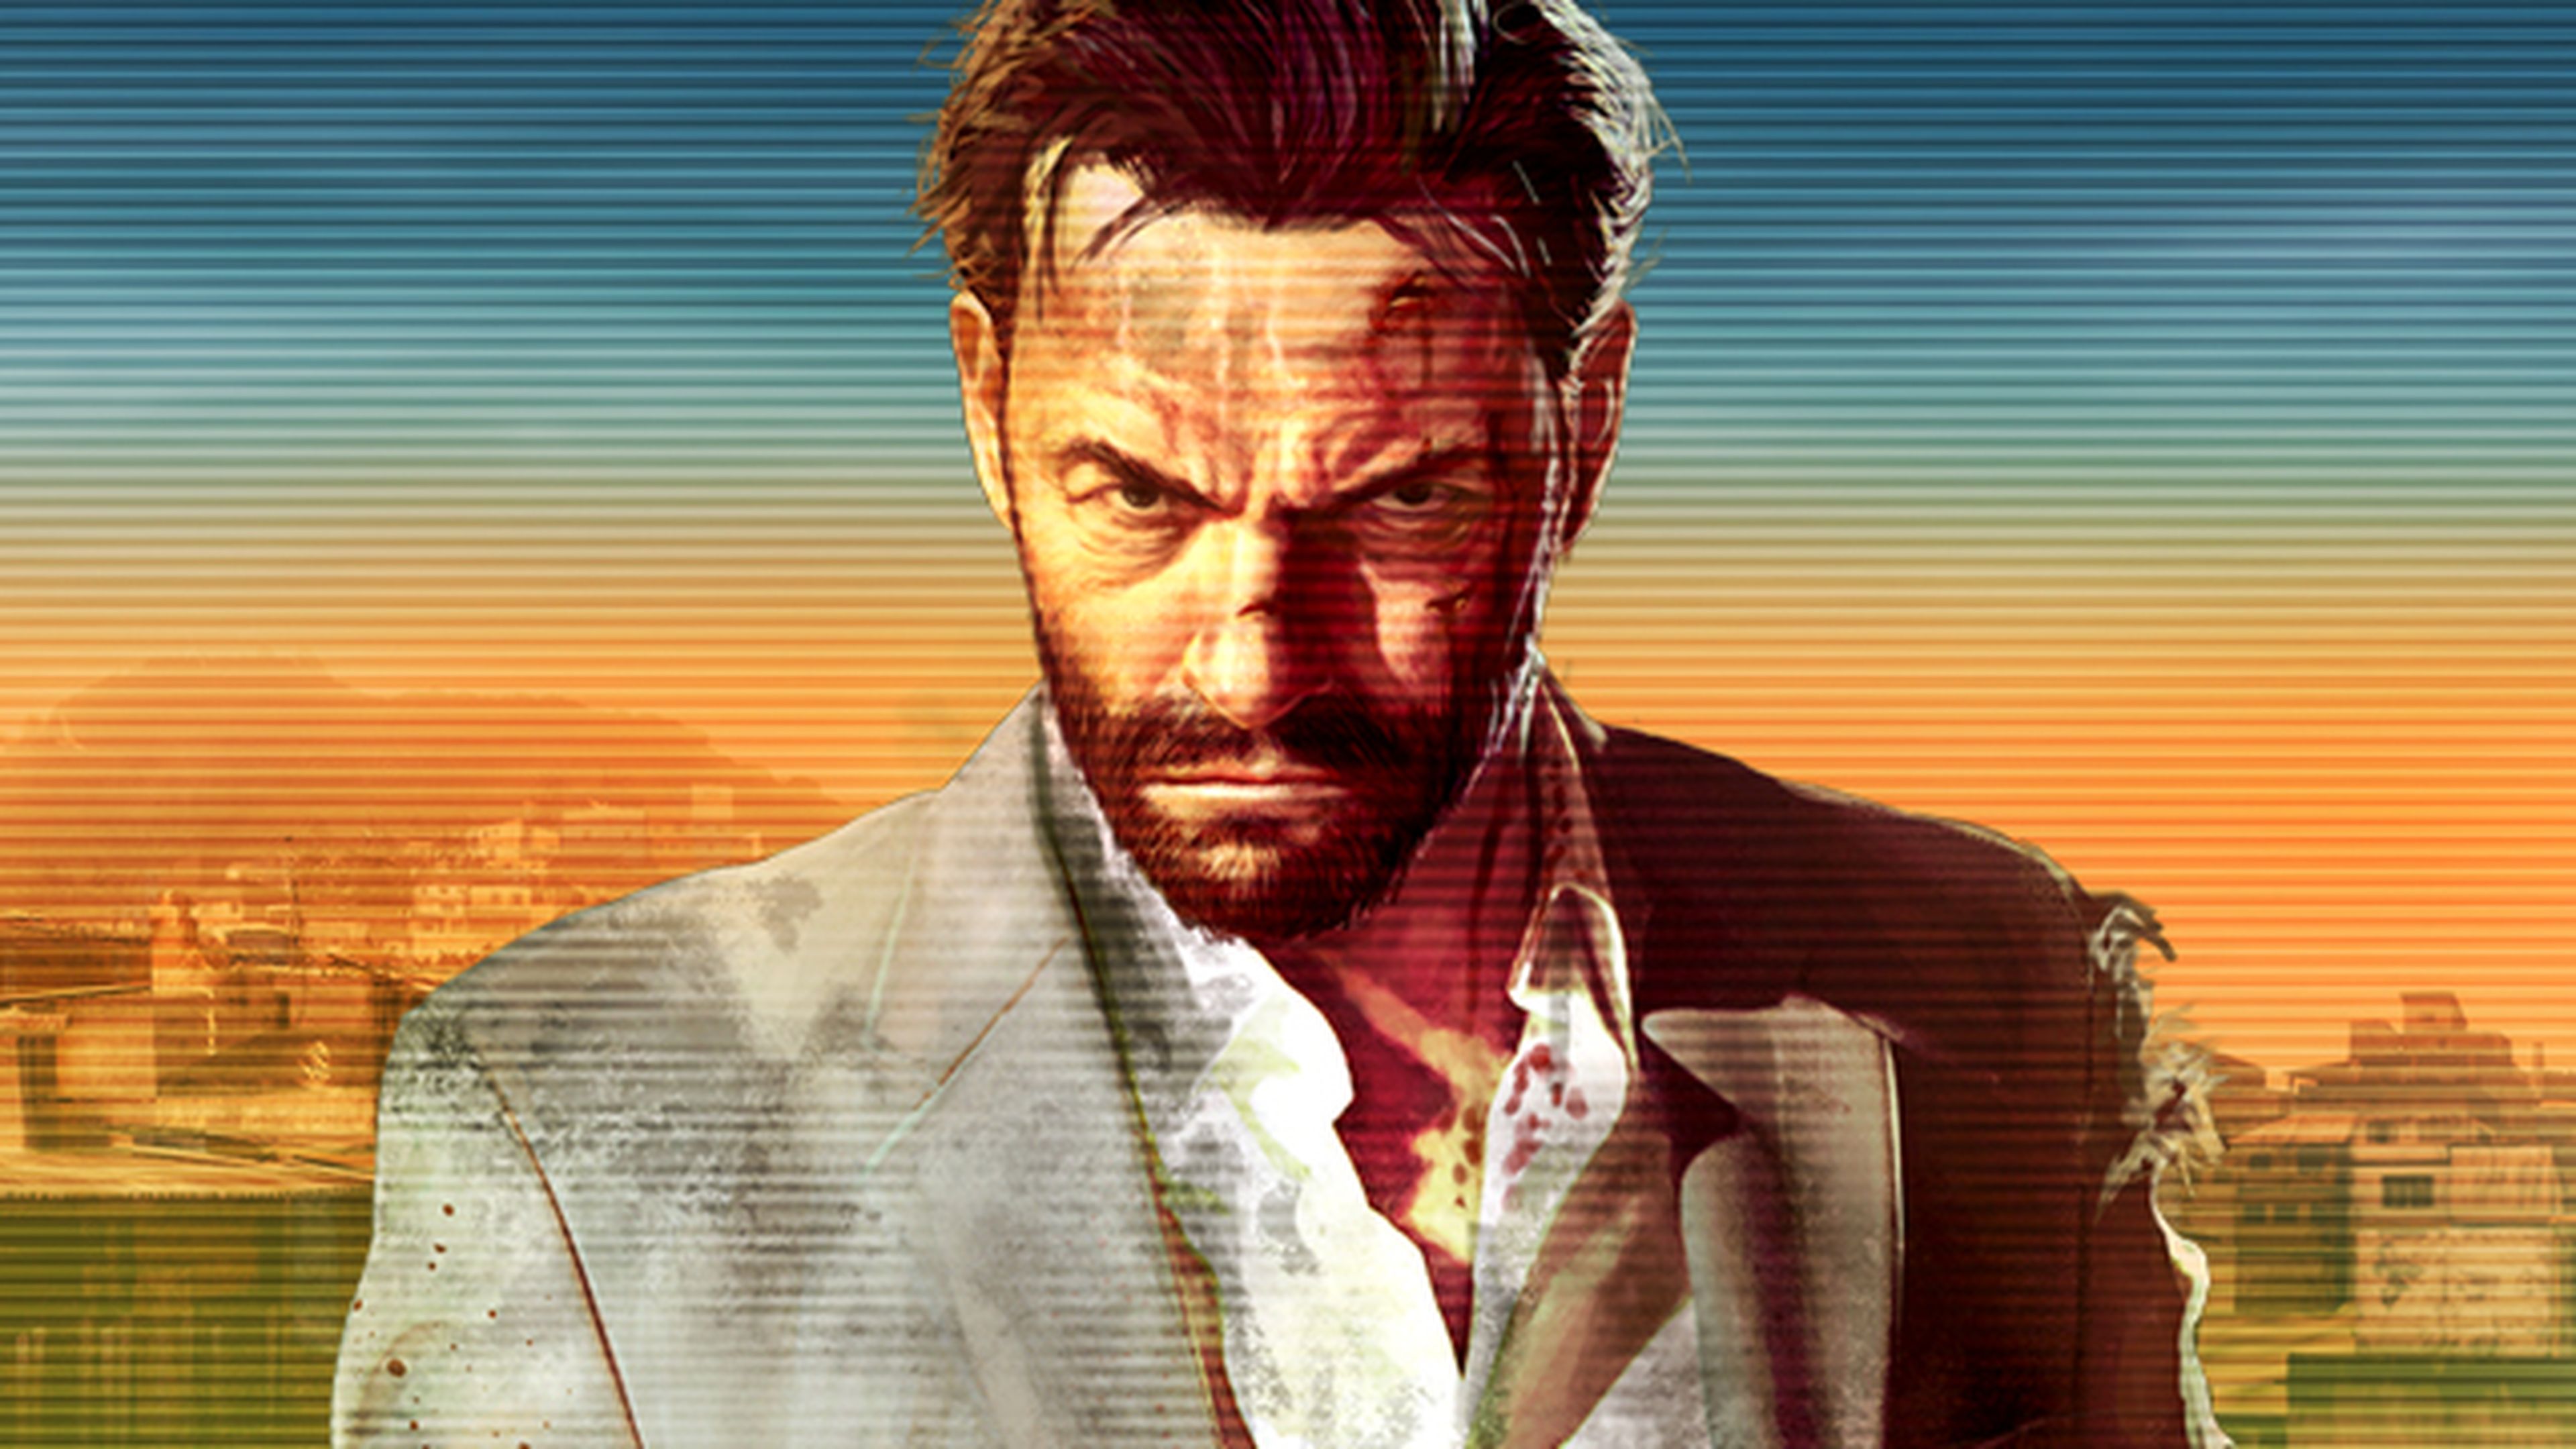 Análisis de Max Payne 3 en PS3 y Xbox 360